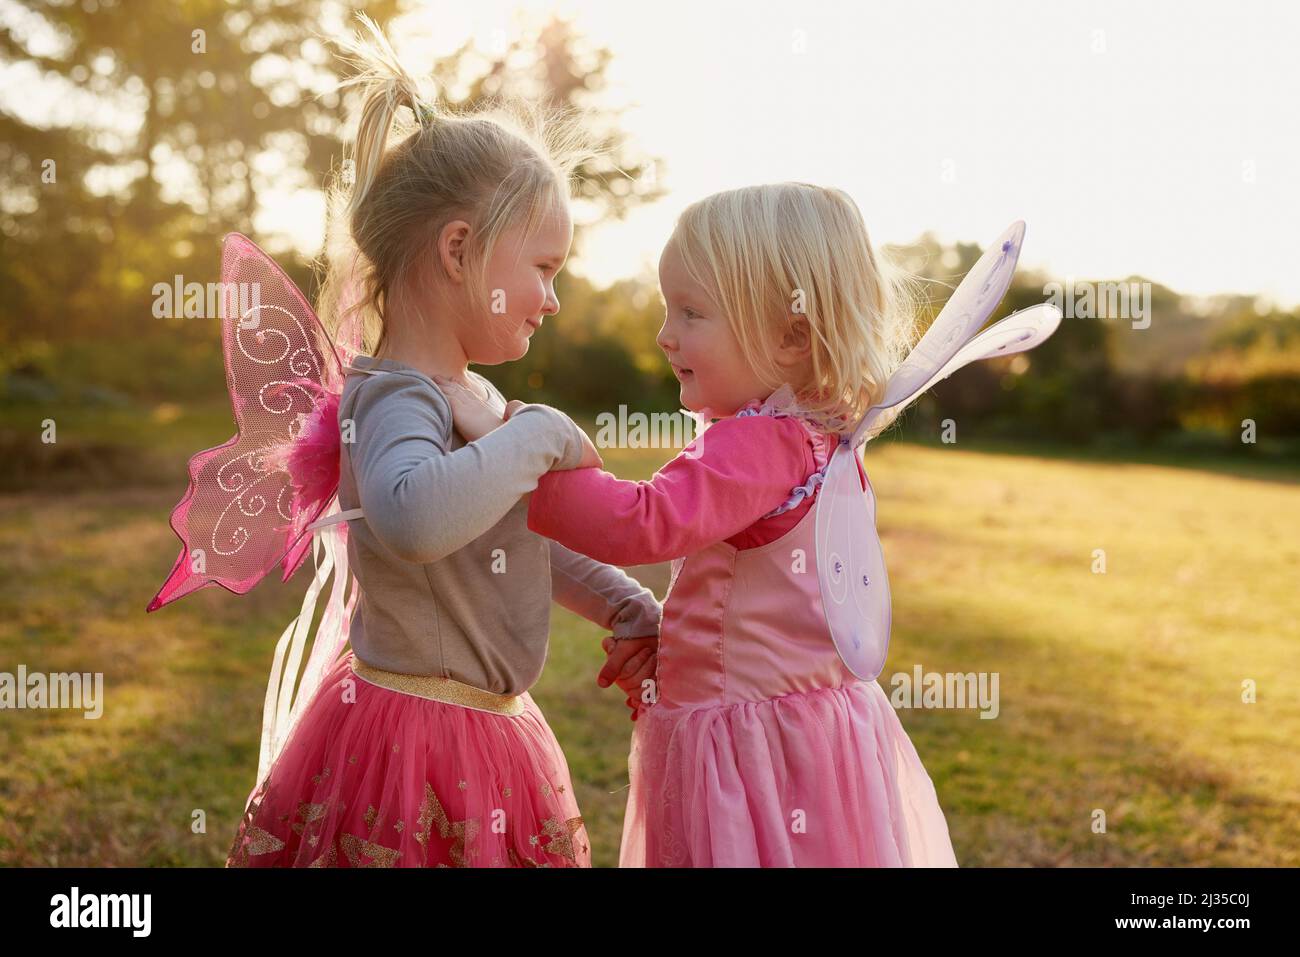 Oh, was für ein Spaß es ist, kleine Kinder zu sein. Eine kurze Aufnahme von zwei kleinen Mädchen, die draußen zusammen spielen. Stockfoto